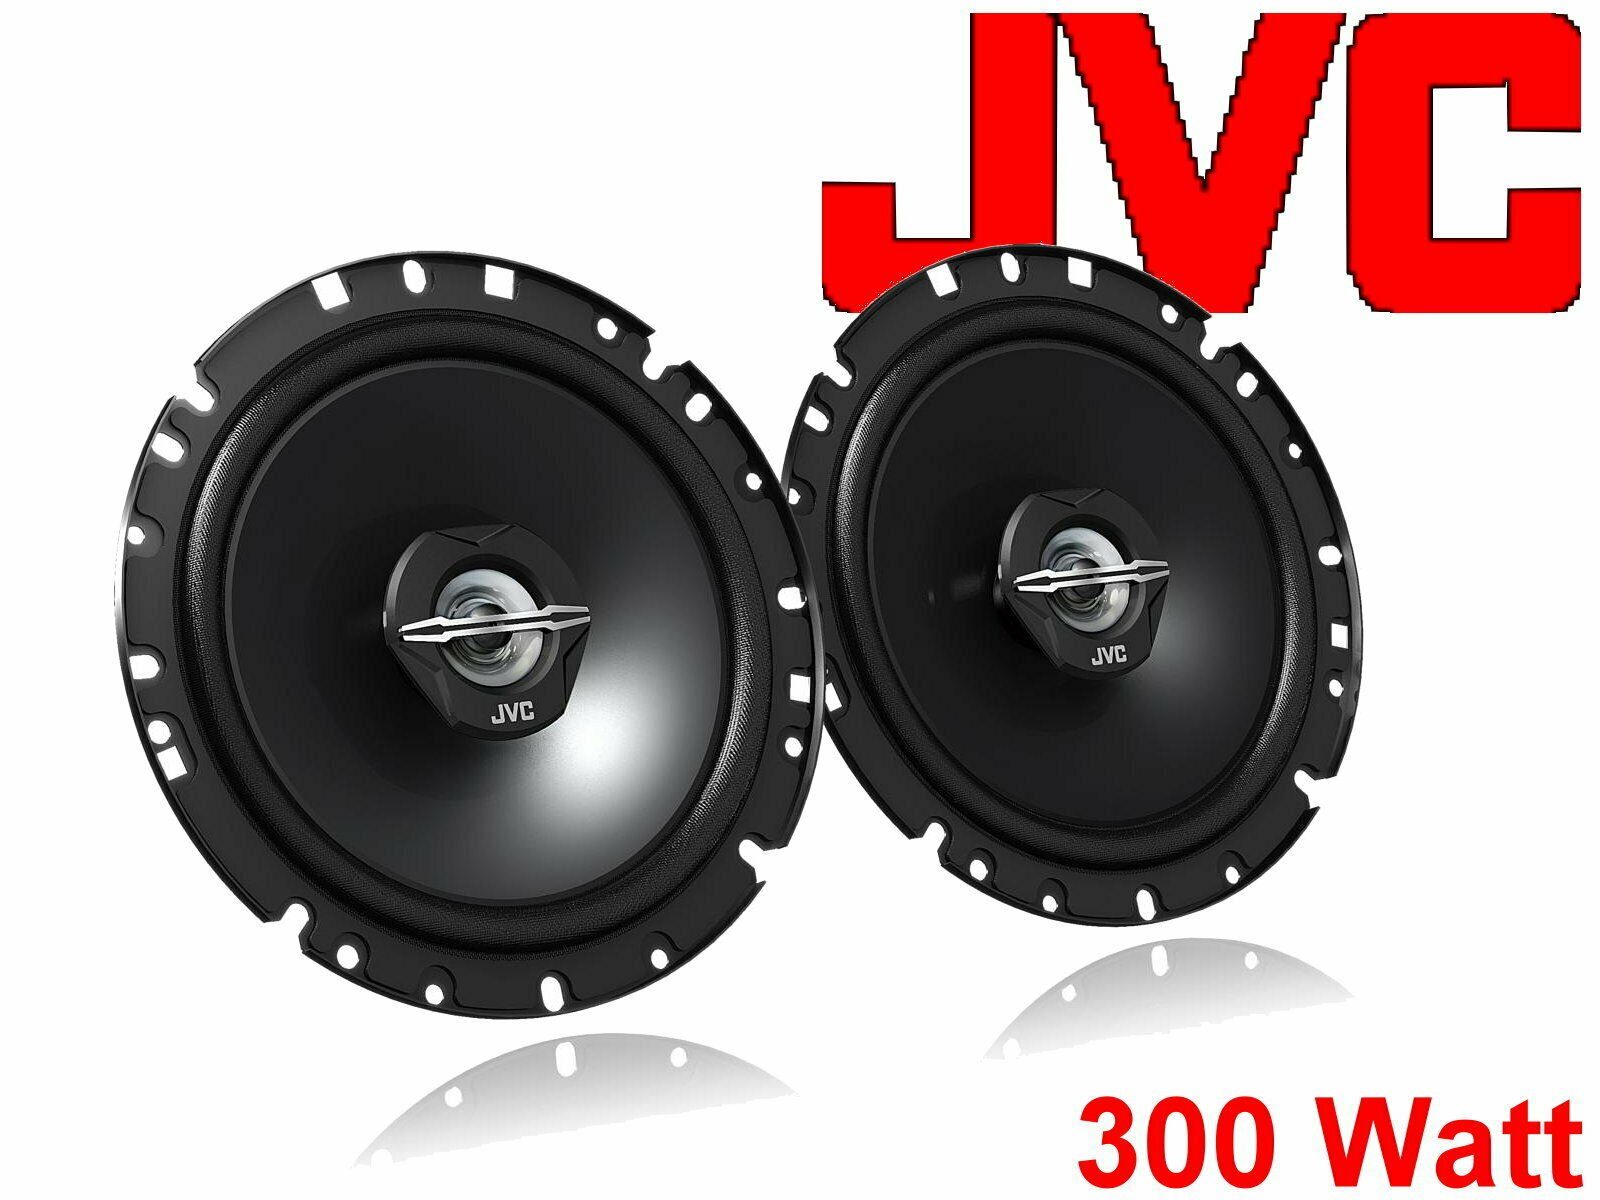 DSX JVC passend für Ford - (30 06/07 Mondeo 2019 Lautsp Bj Auto-Lautsprecher W)